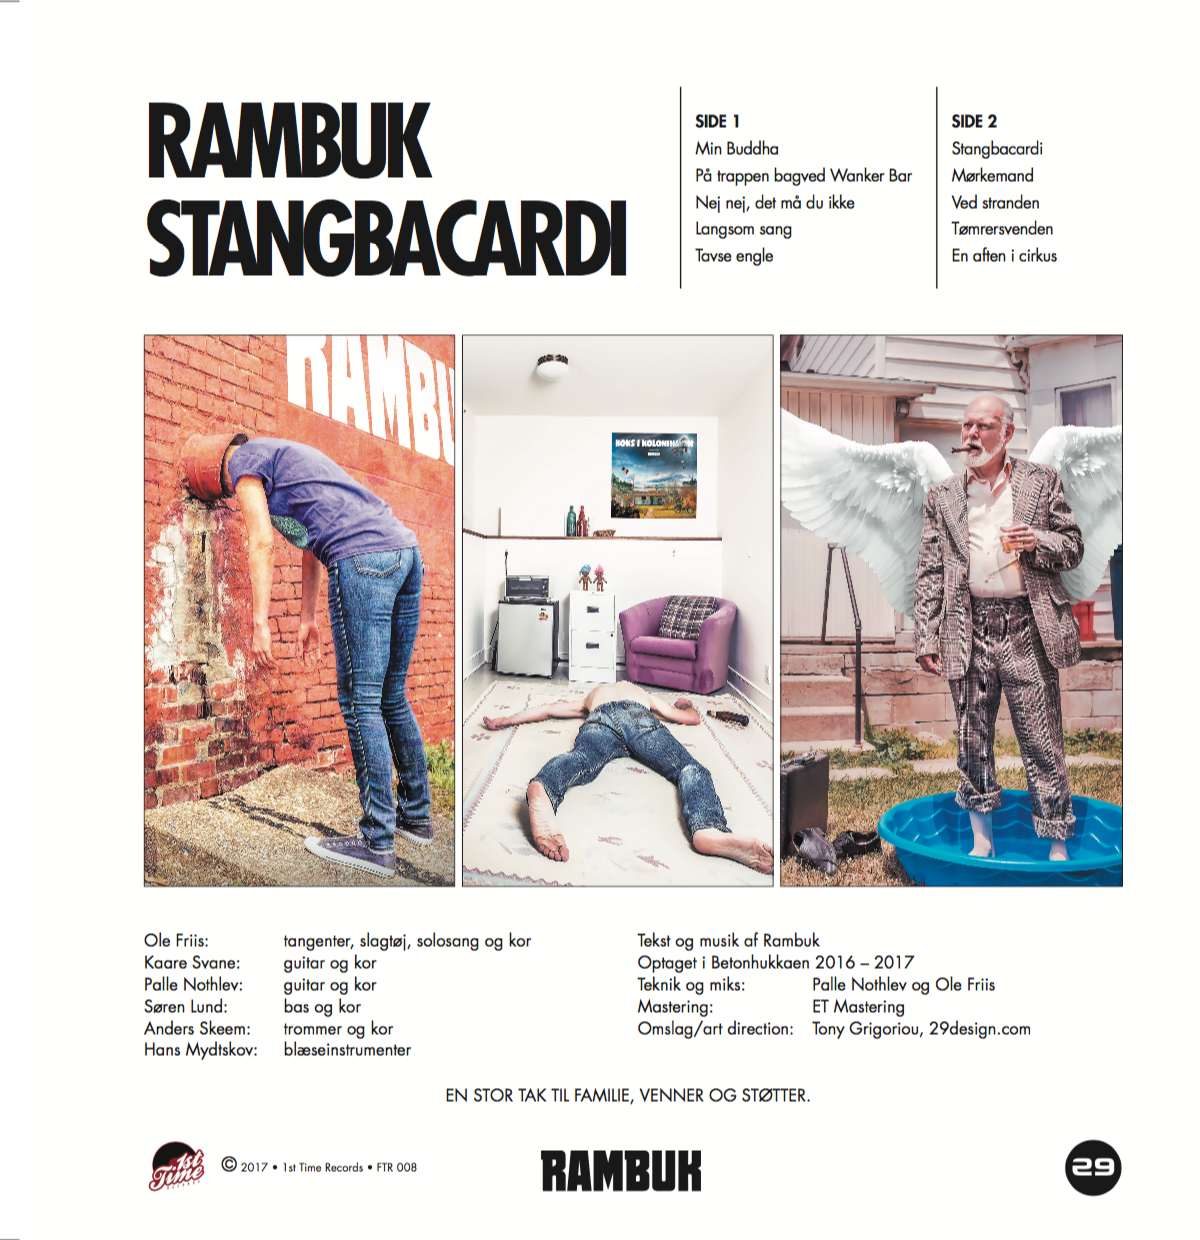 Rambuk - Stangbacardi